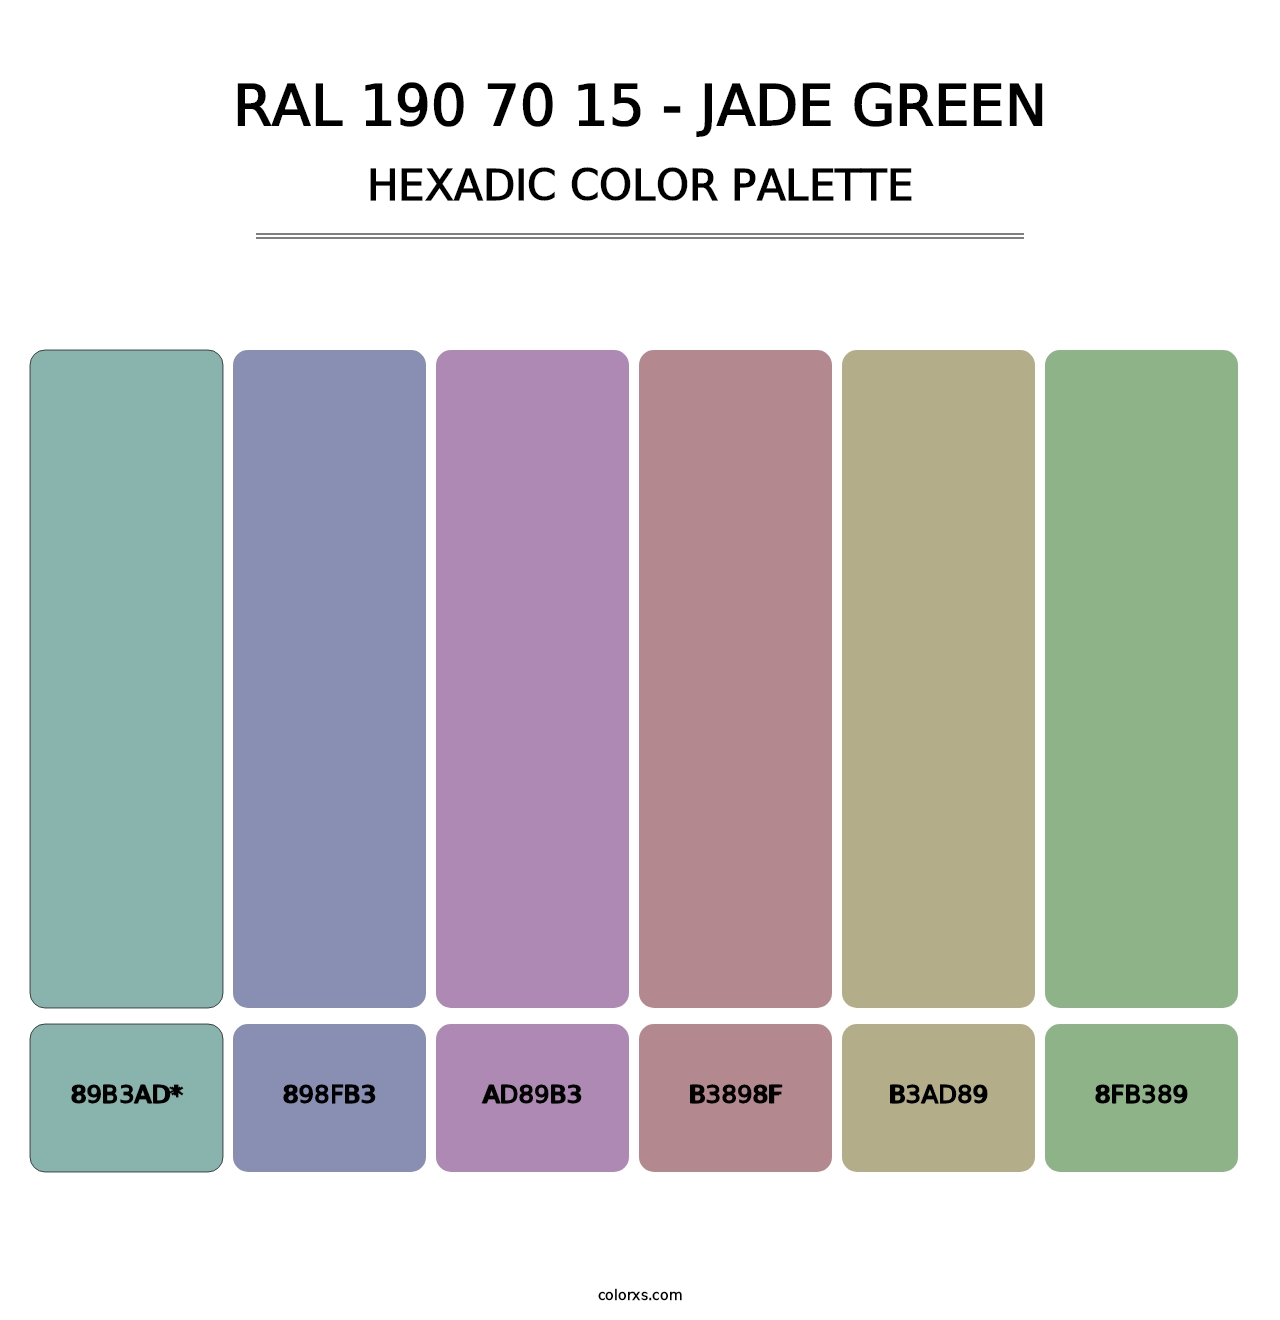 RAL 190 70 15 - Jade Green - Hexadic Color Palette